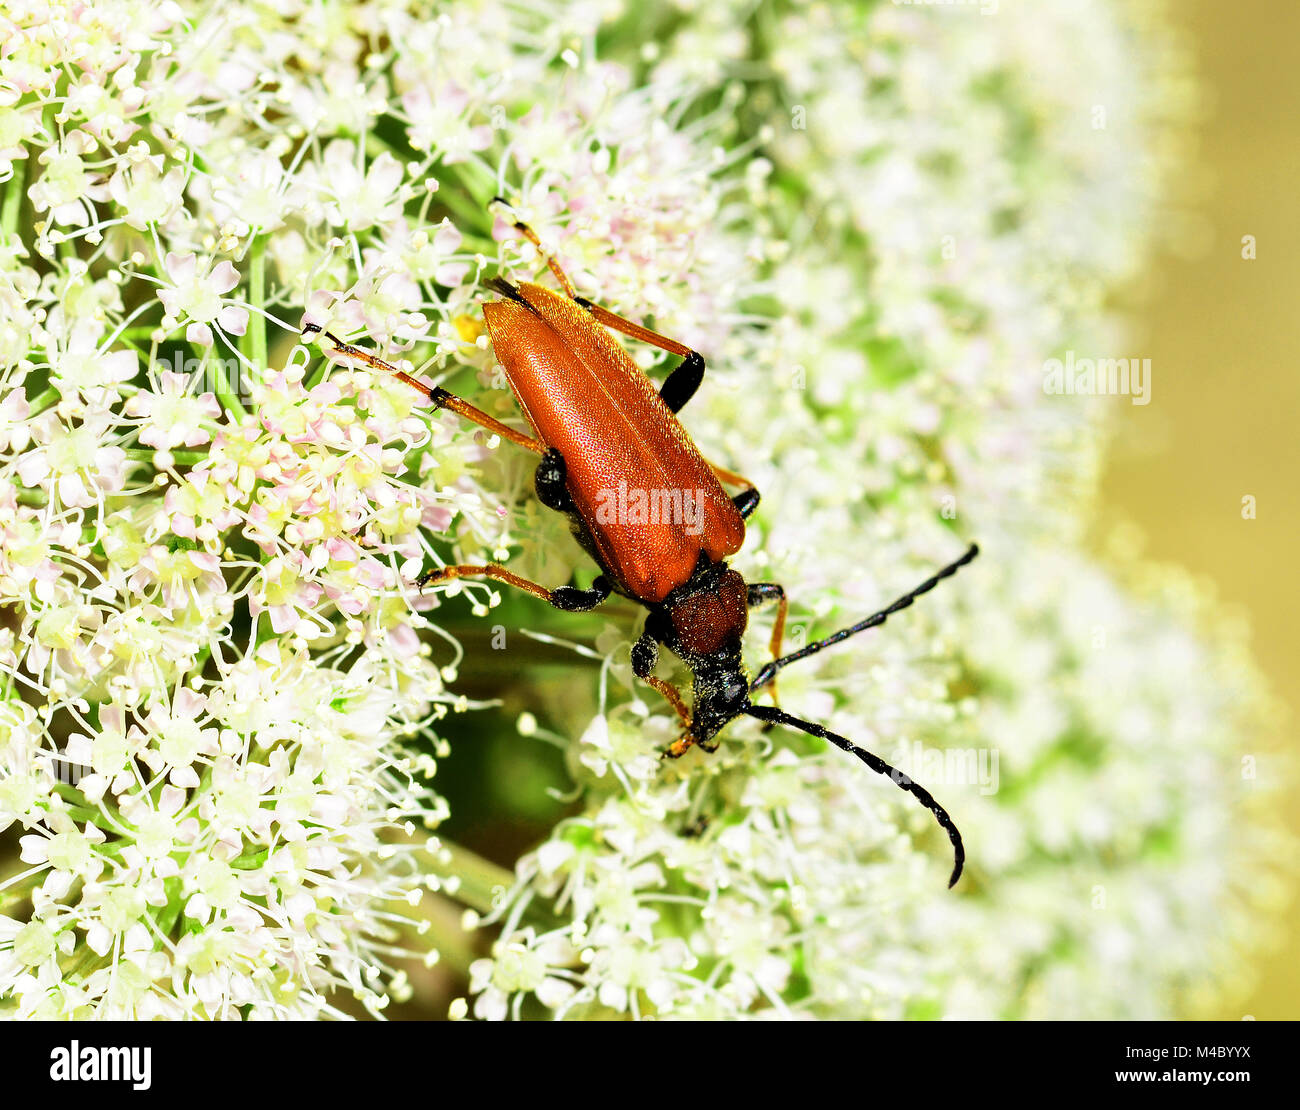 beetle, red longhorn beetle, red-brown longhorn beetle, Stock Photo